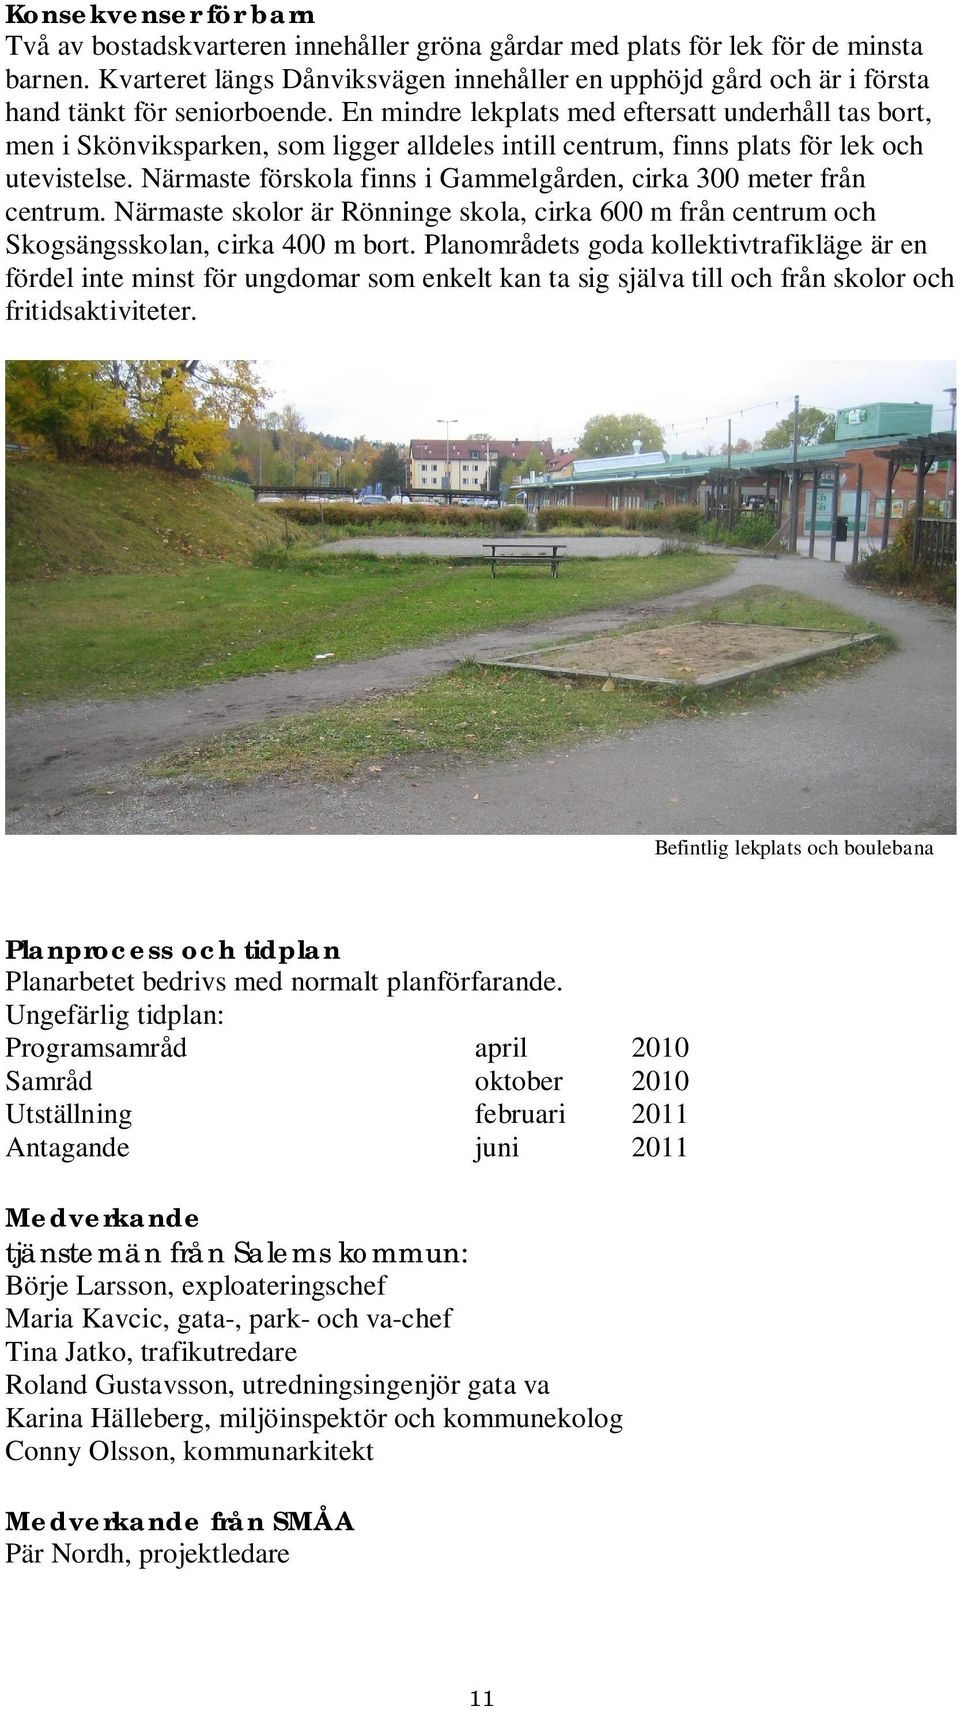 En mindre lekplats med eftersatt underhåll tas bort, men i Skönviksparken, som ligger alldeles intill centrum, finns plats för lek och utevistelse.